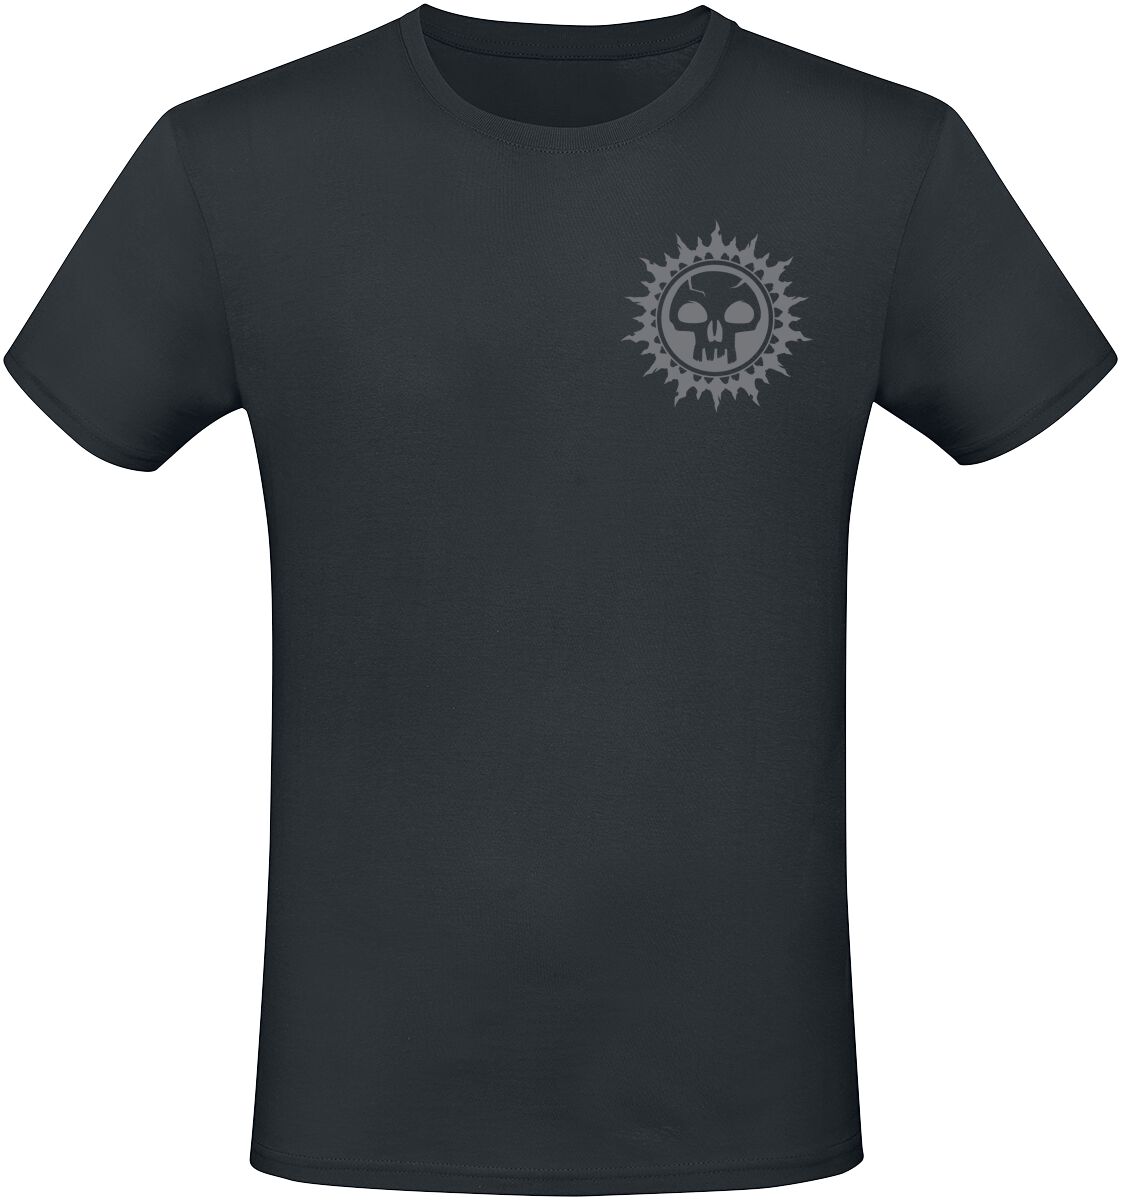 Magic: The Gathering - Gaming T-Shirt - Black Mana - S bis XXL - für Männer - Größe M - schwarz  - EMP exklusives Merchandise!